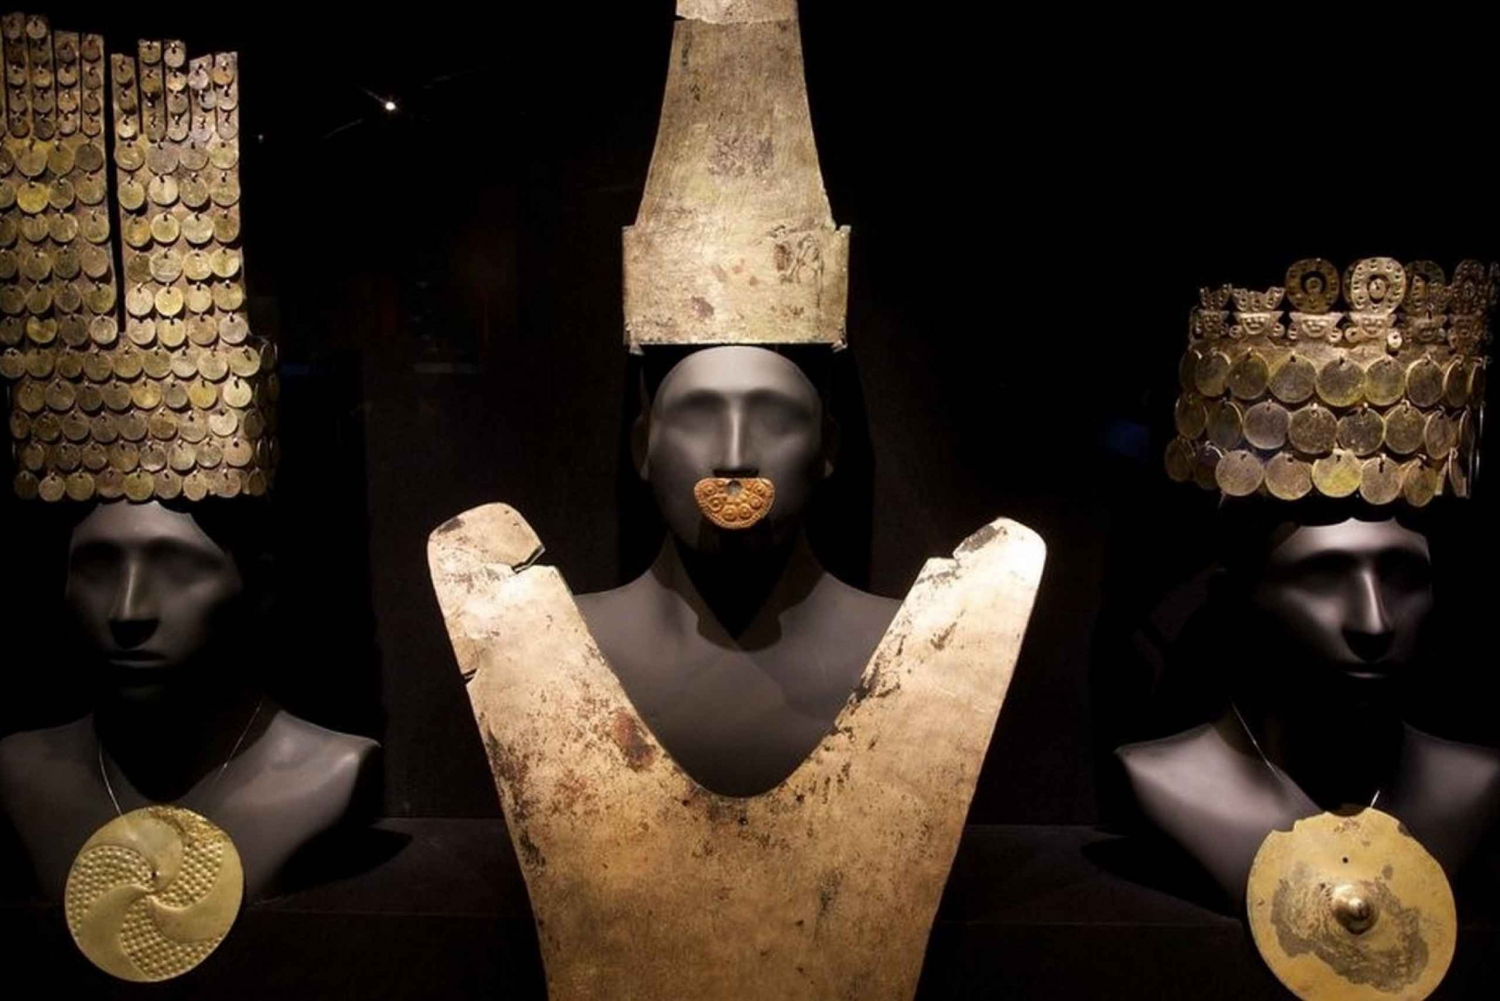 Larcon museo - Muinaisen Perun aarteet - nouto mukaan lukien